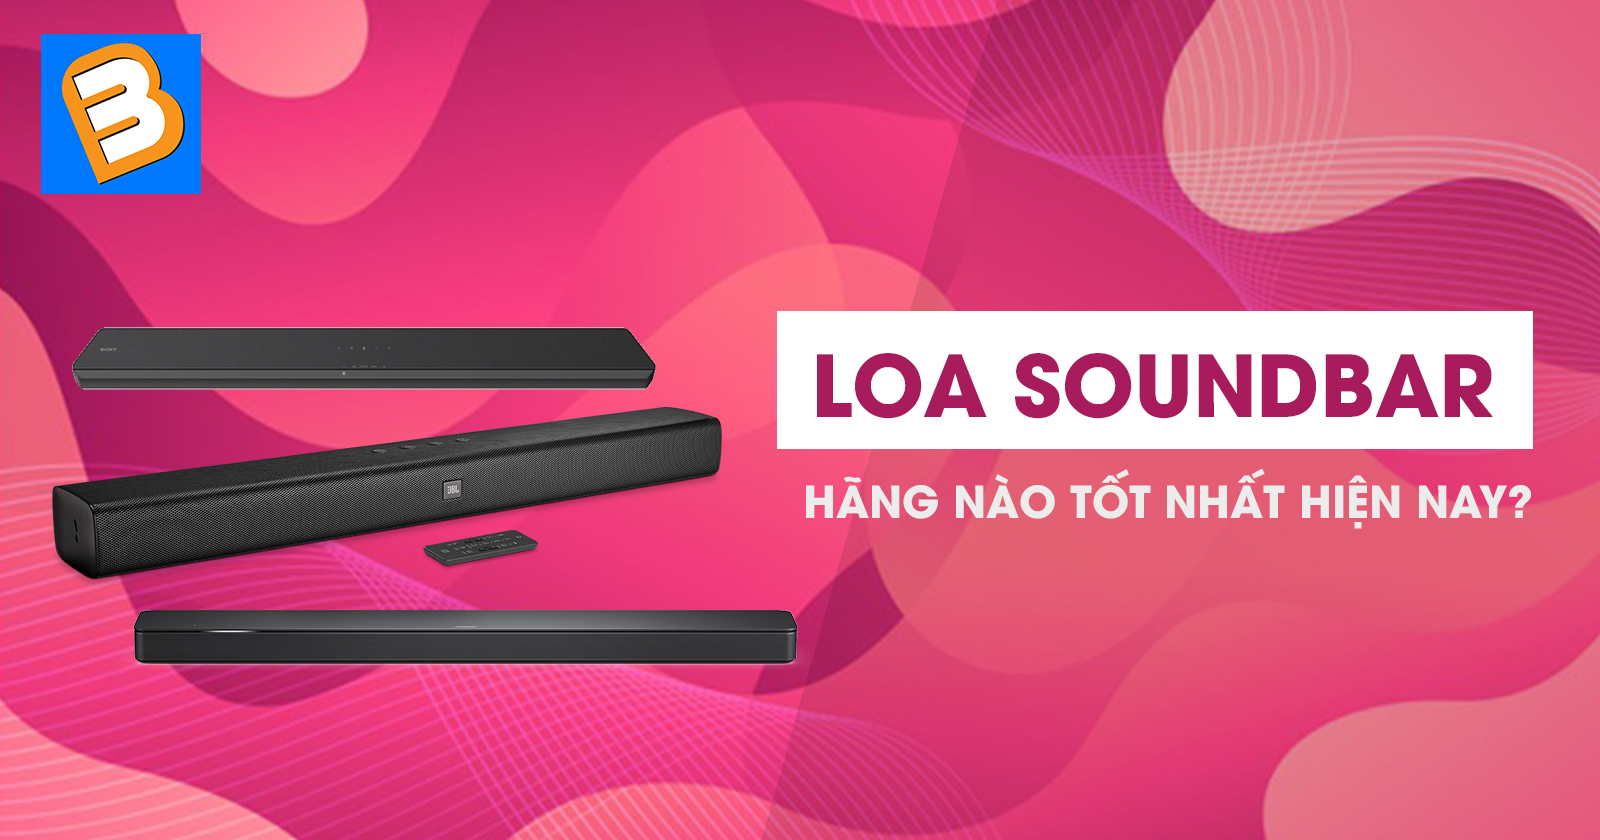 Bạn đã biết nên mua loa soundbar hãng nào tốt nhất hiện nay?